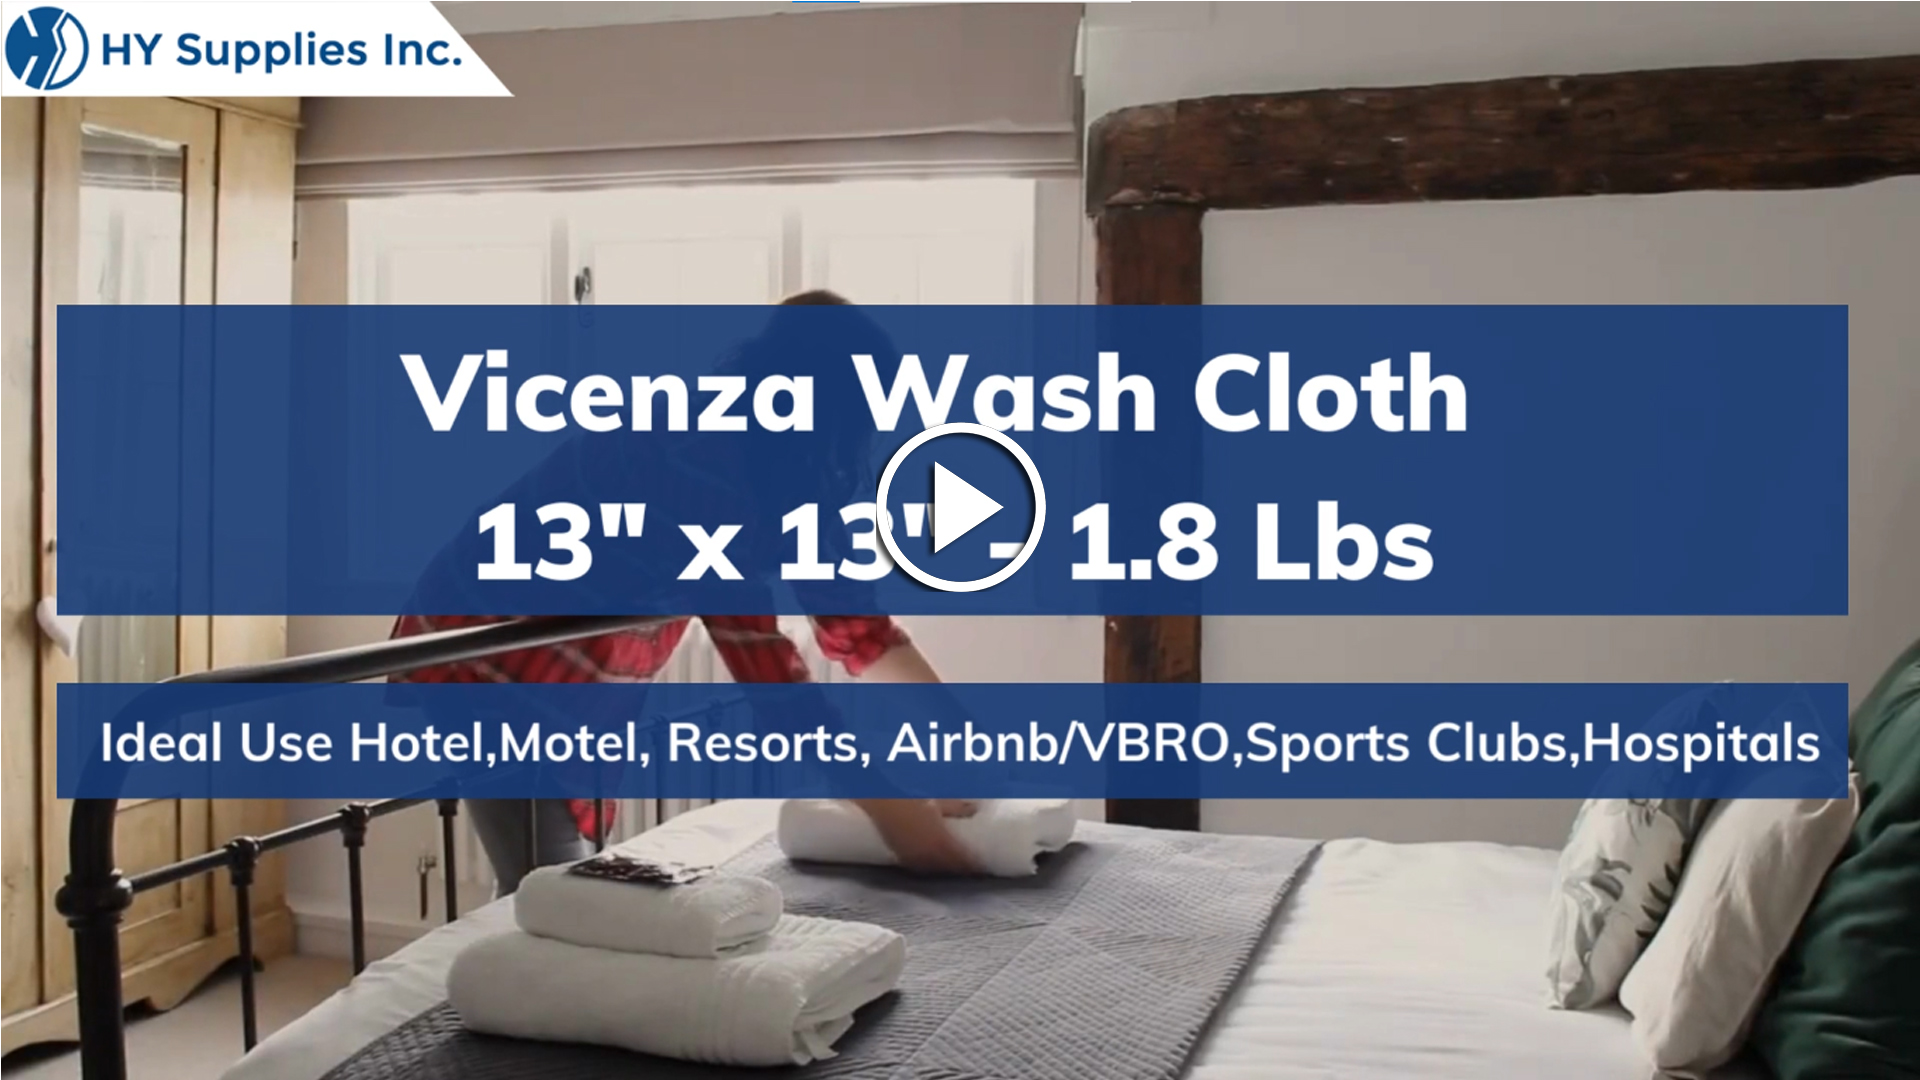 Vicenza Wash Cloth - 13" x 13" - 1.8 Lbs